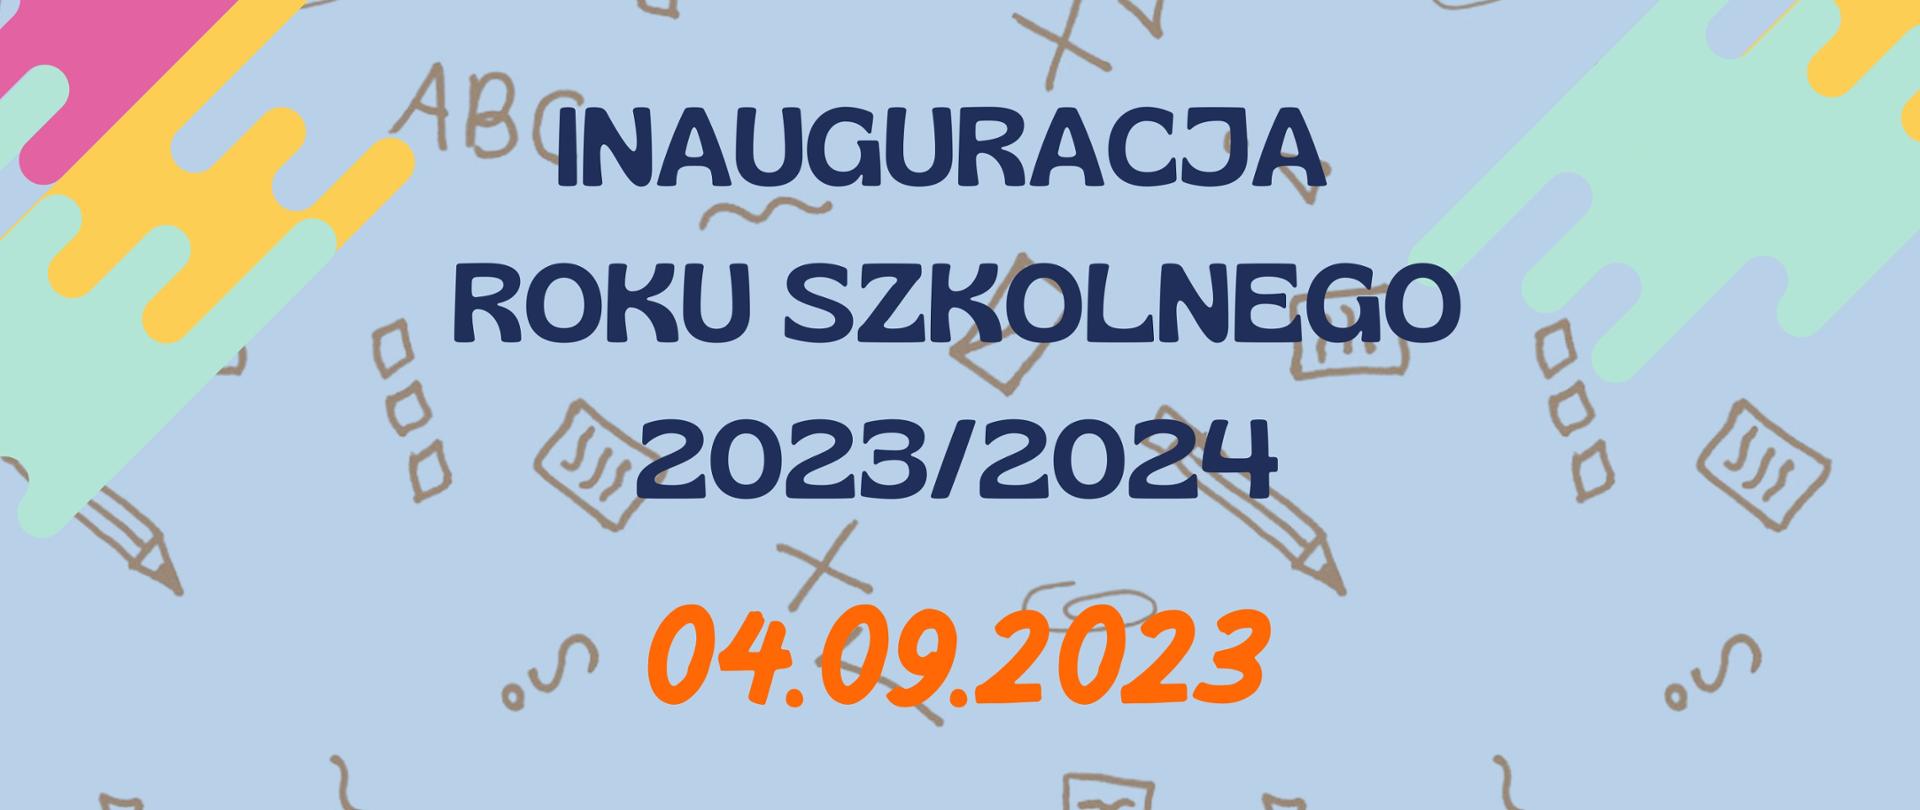 Na tle w kolorze niebiesko-szarym z elementami znaków interpunkcyjnych oraz matematycznych wzorów hasło "inauguracja roku szkolnego 2023/2024" oraz data. 